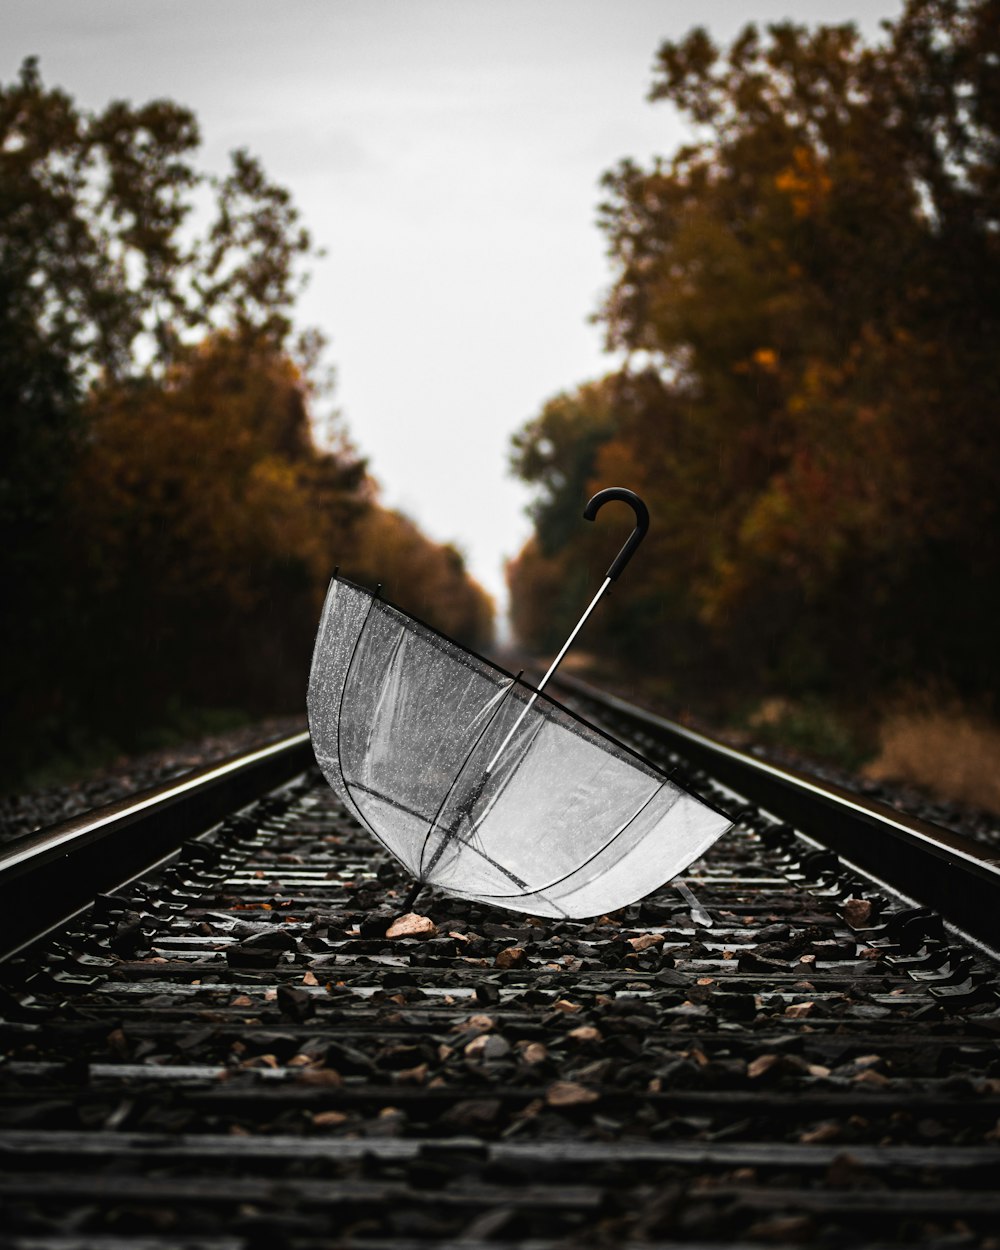 parapluie transparent sur rail de train